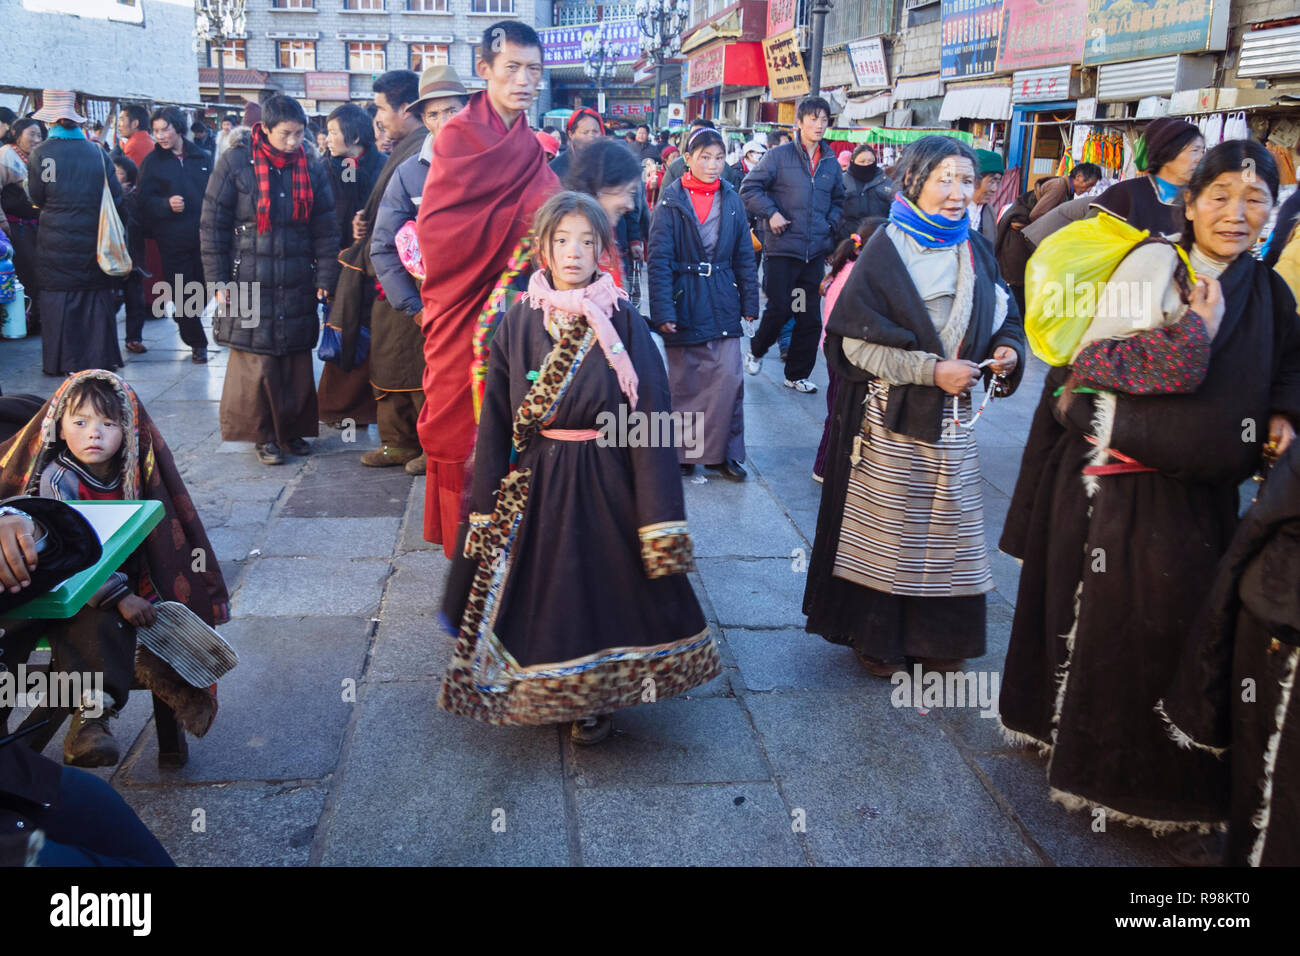 Lhasa, regione autonoma del Tibet, Cina : del popolo tibetano a piedi per le strade del quartiere Barkhor. Foto Stock